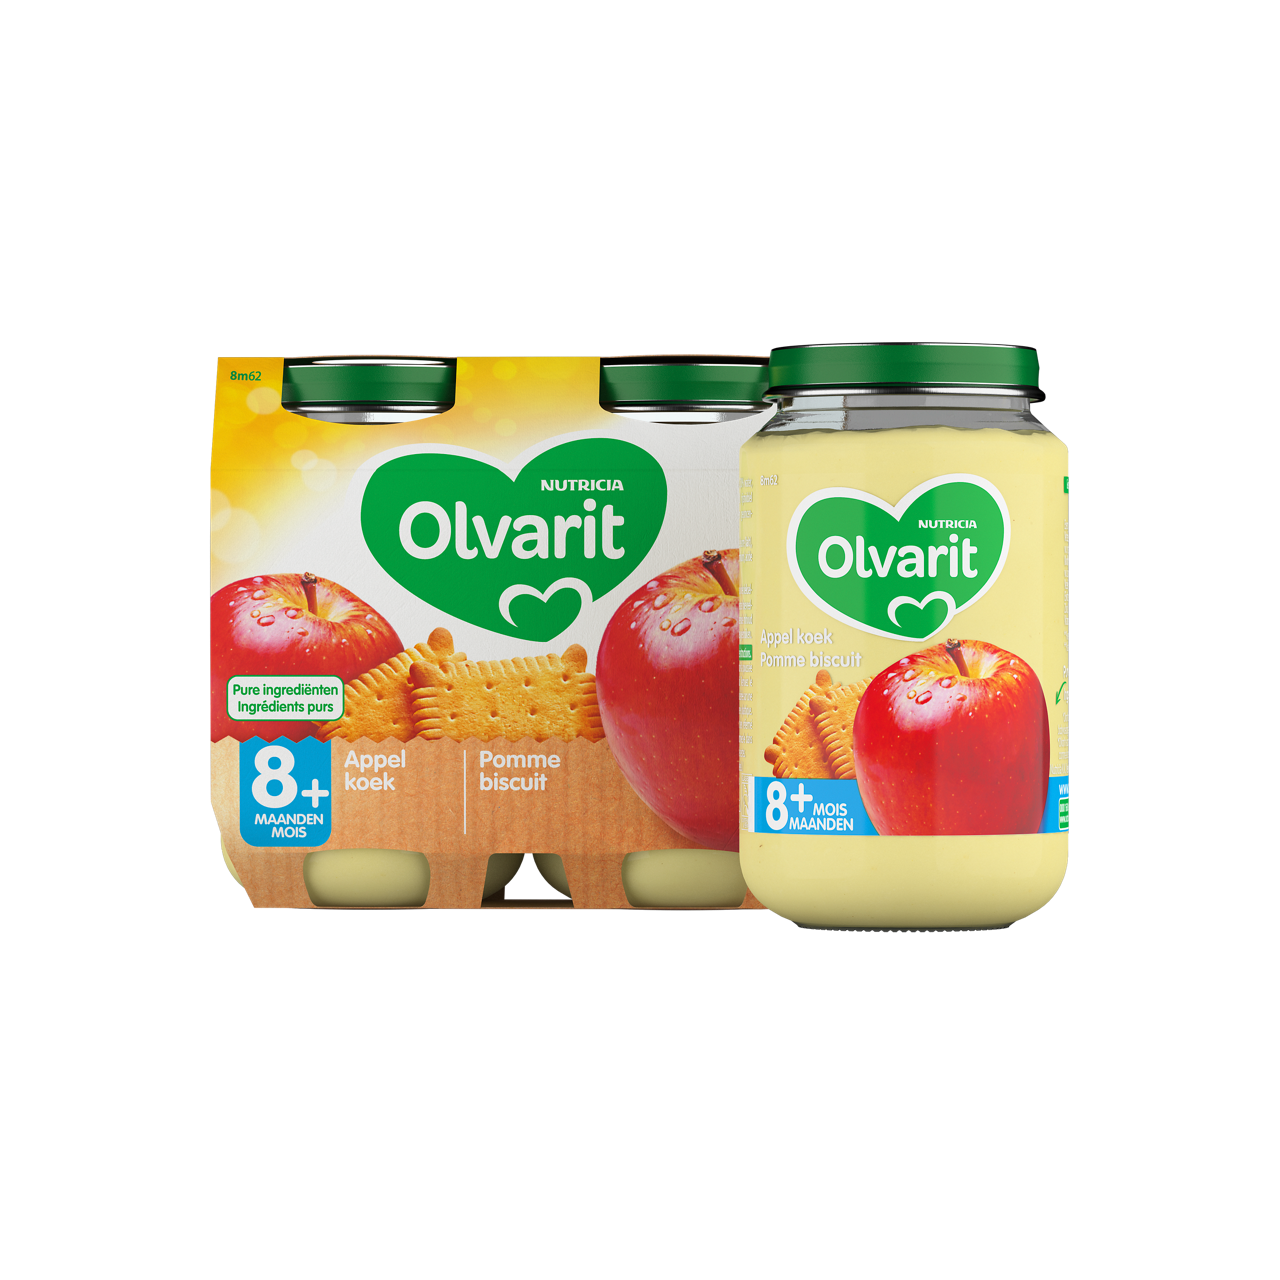 Olvarit Pomme Biscuit. Consultez notre site web Olvarit.be pour plus d'info sur alimentation pour bébé et les produits Olvarit.